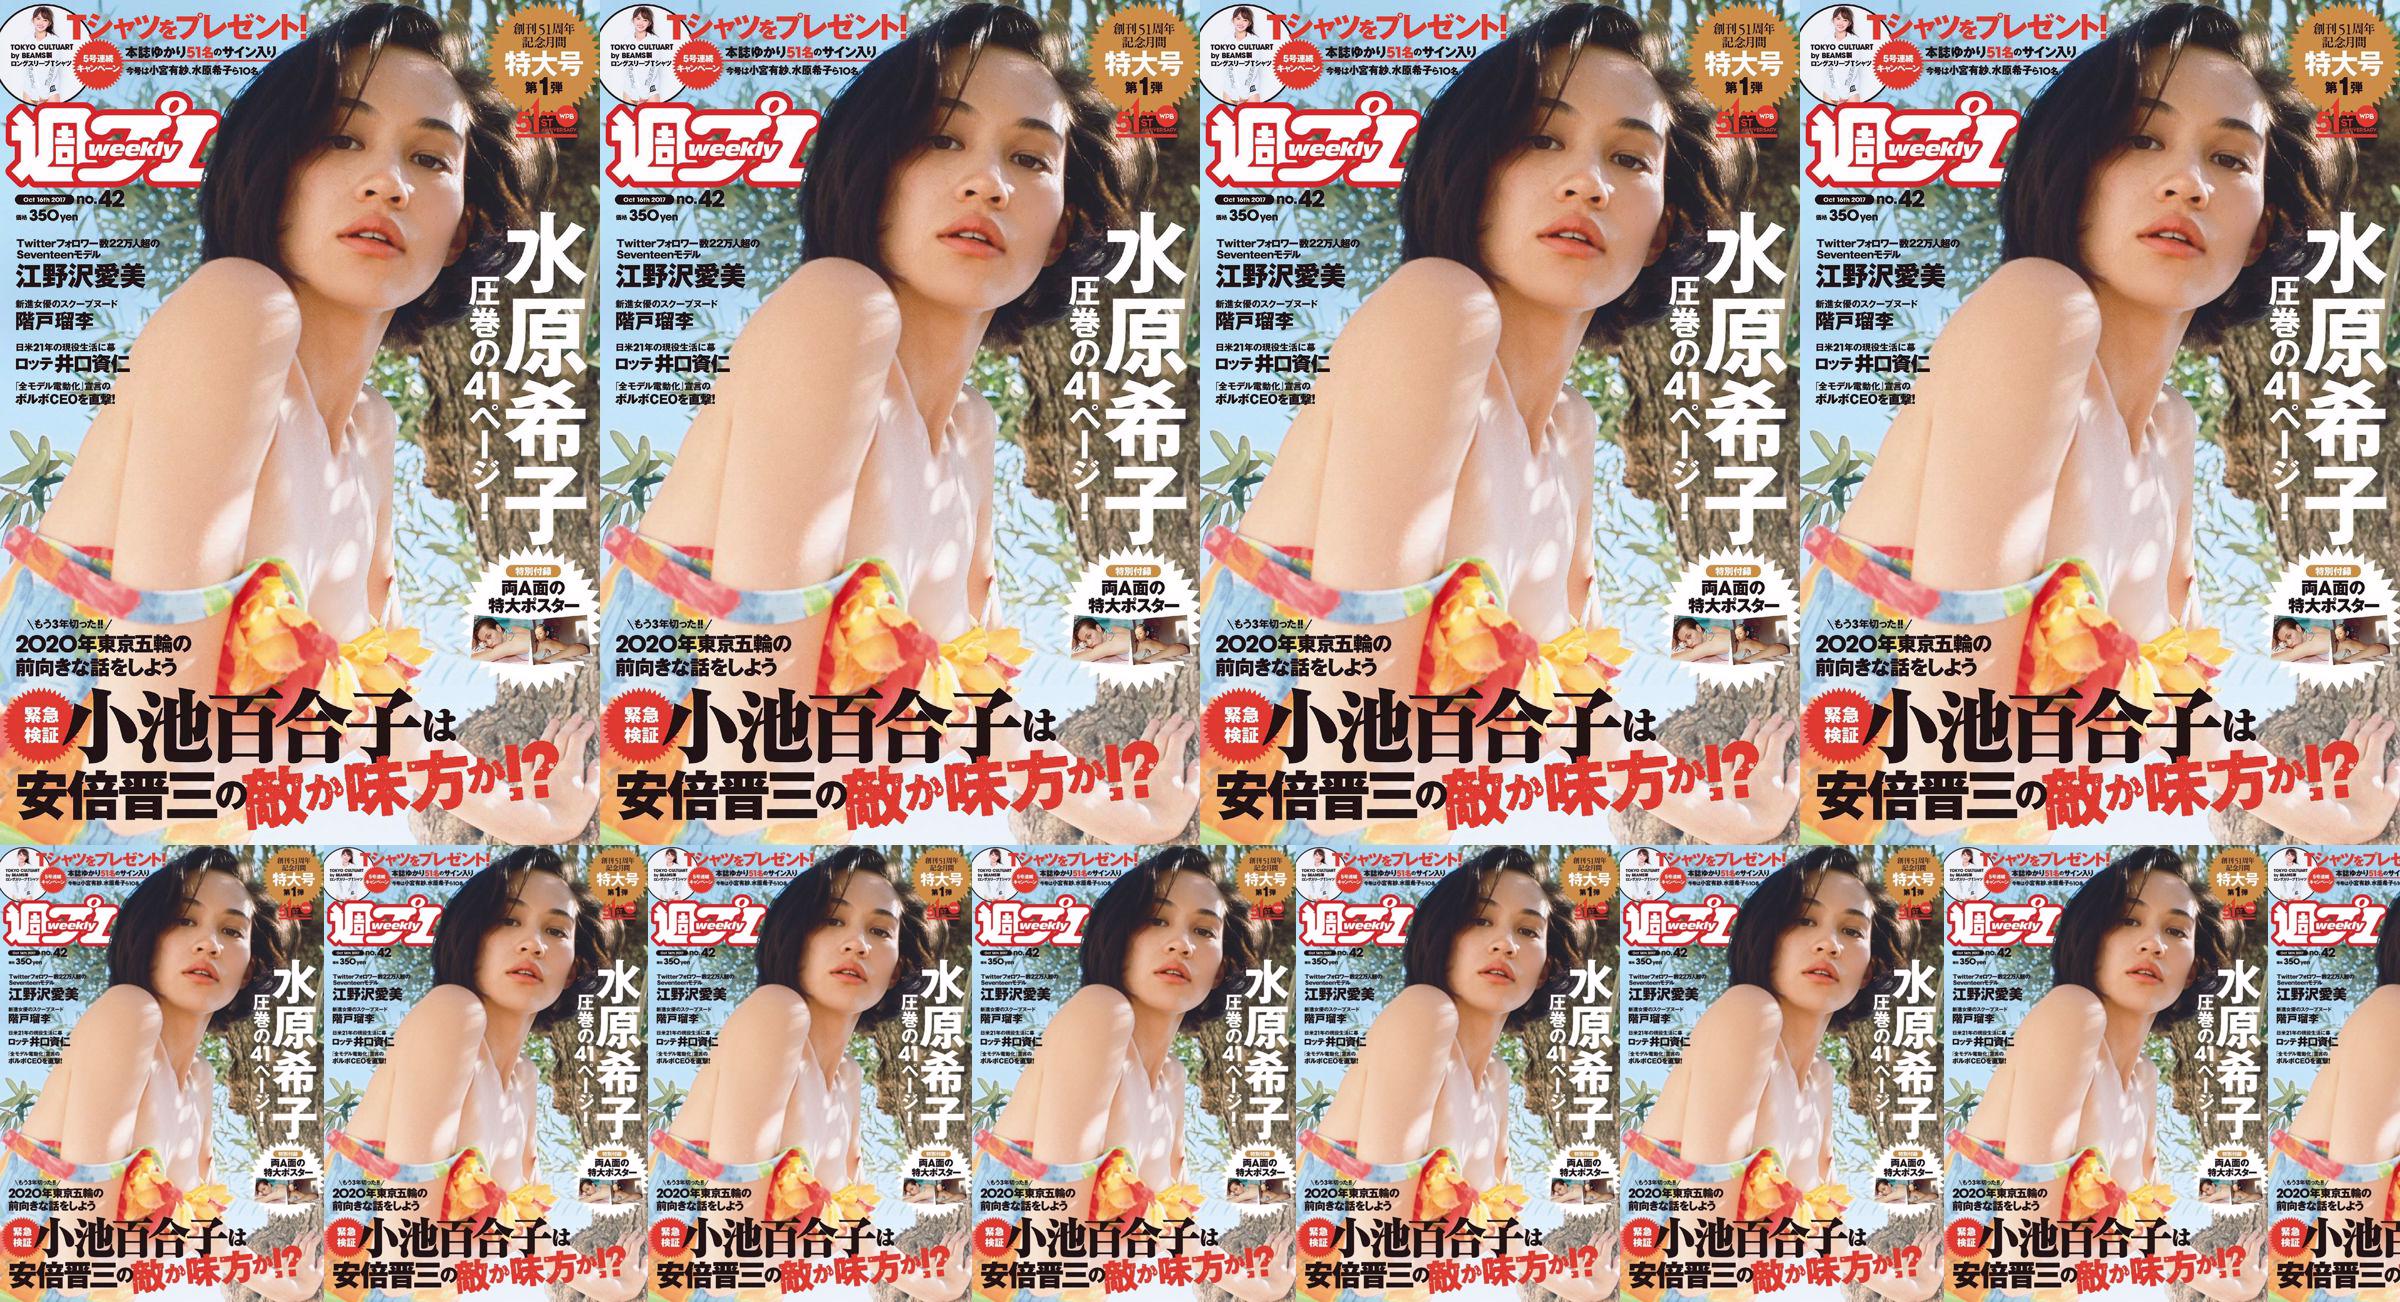 Kiko Mizuhara Manami Enosawa Serina Fukui Miu Nakamura Ruri Shinato [Weekly Playboy] 2017 No.42 Photo Magazine No.2e38bf Trang 1